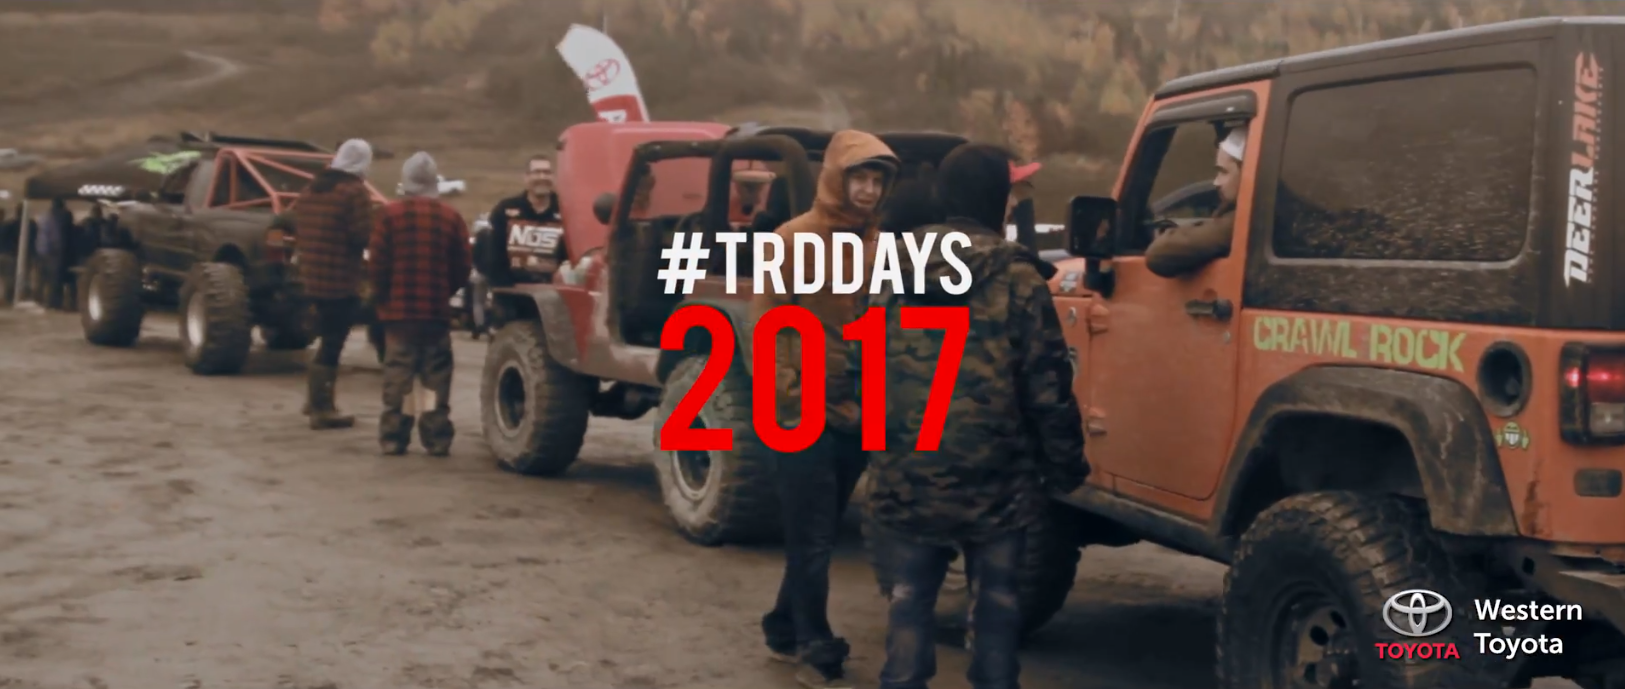 #TRDDays 2017